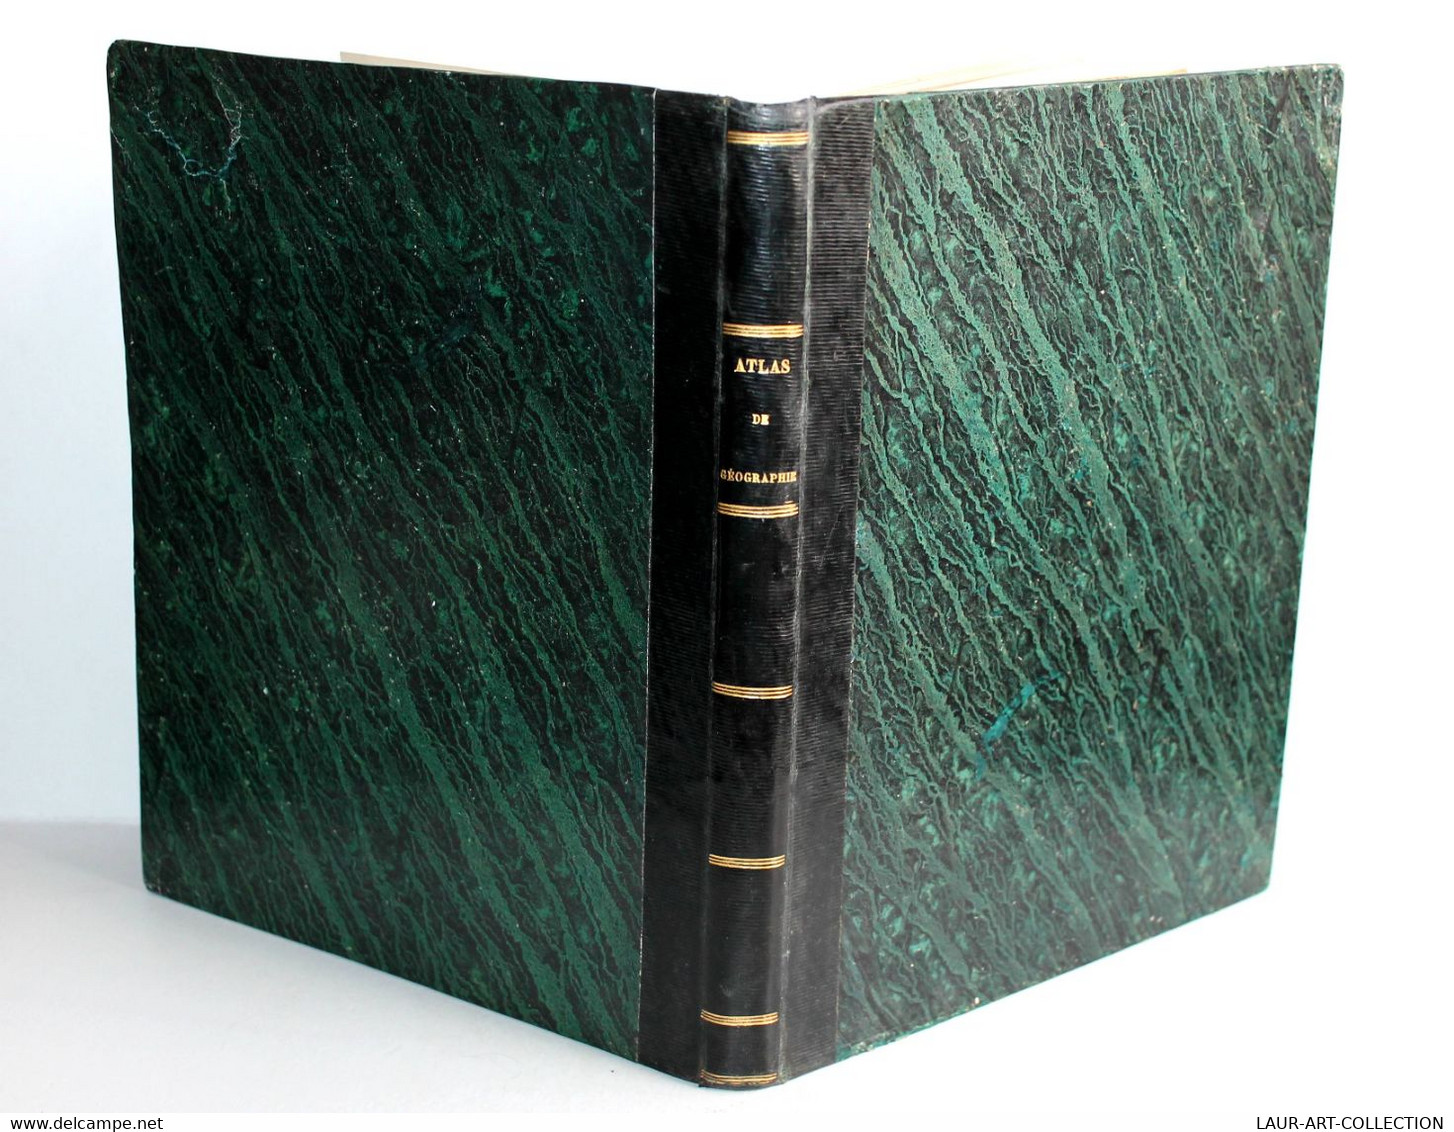 NOUVEL ATLAS CLASSIQUE  PHYSIQUE, POLITIQUE, HISTORIQUE Et COMMERCIAL Par L. VAT / ANCIEN LIVRE DE COLLECTION (2301.203 - Encyclopedieën